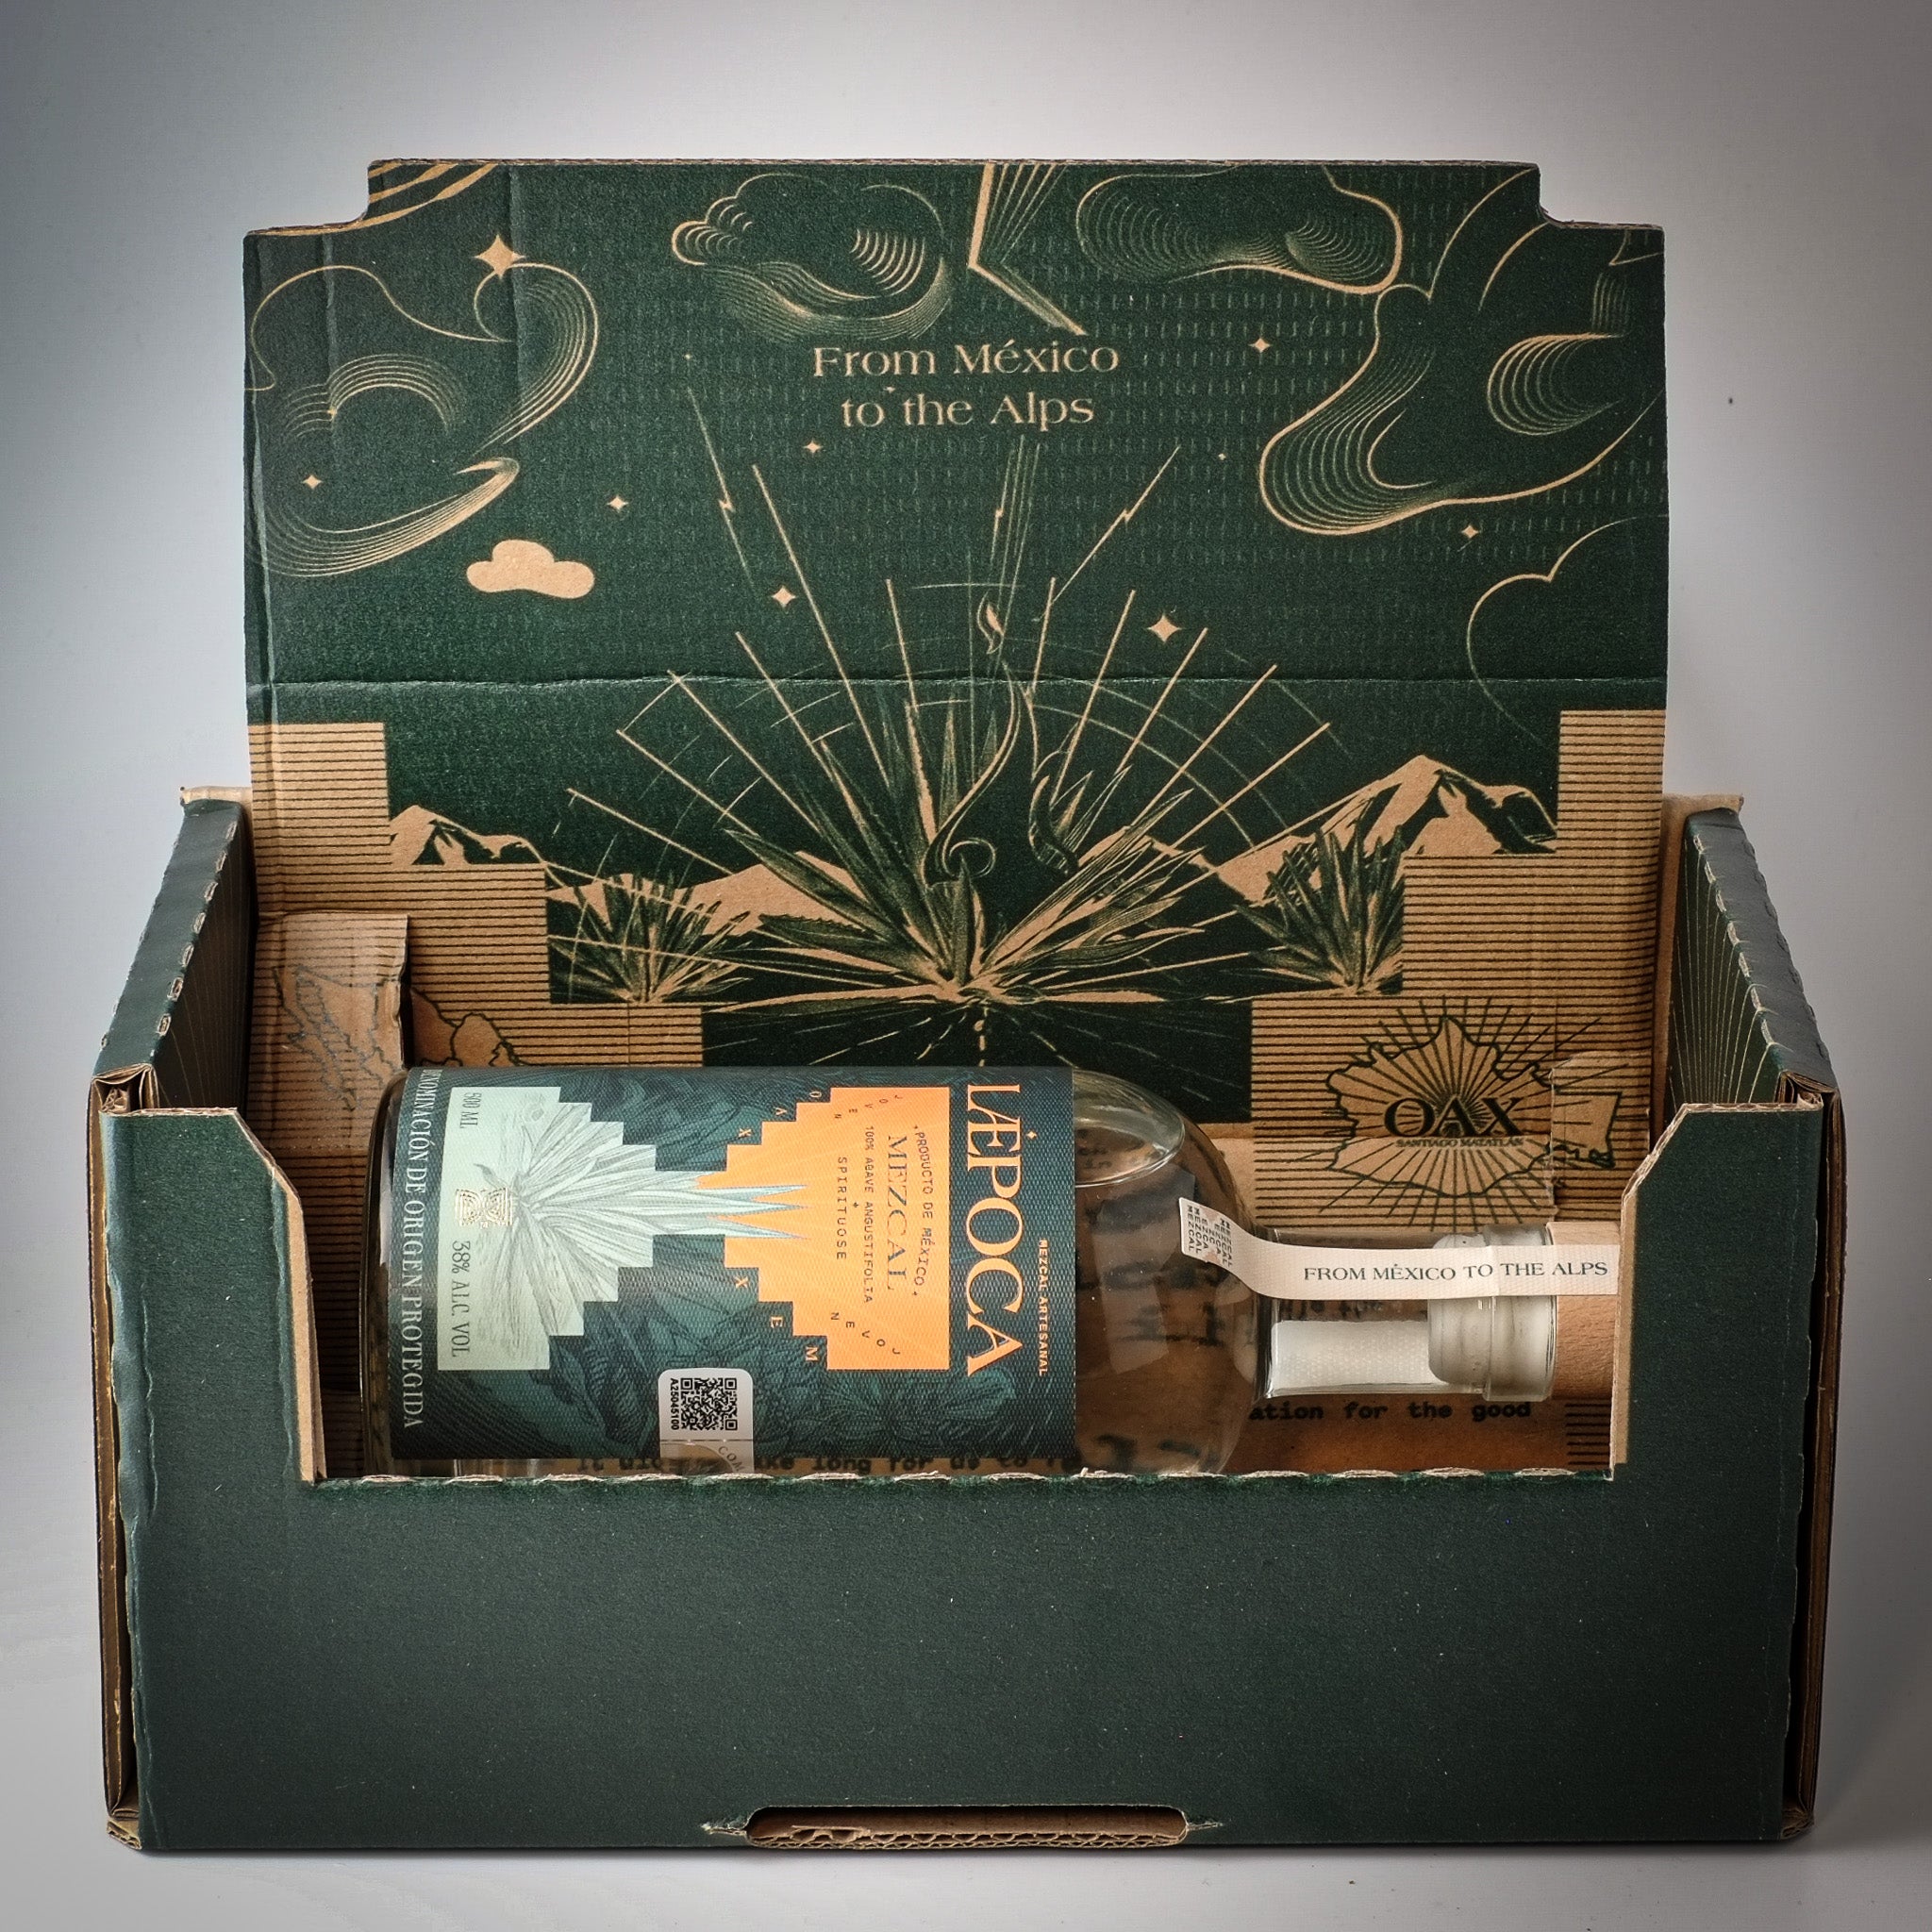 LÆPOCA Mezcal Flasche liegend in einer grünen Geschenkebox.